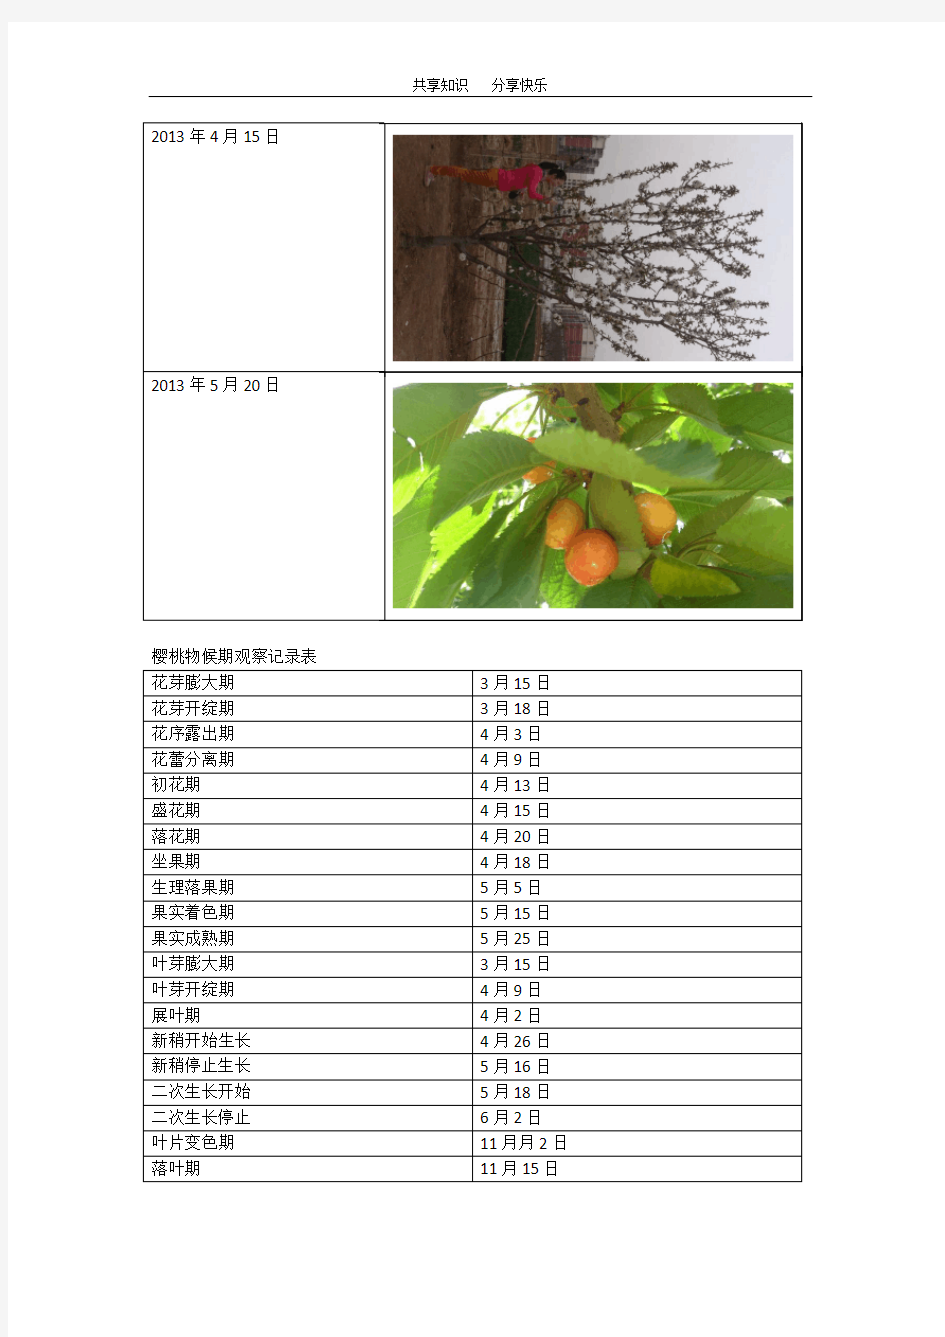 果树物候期报告-田间实验报告